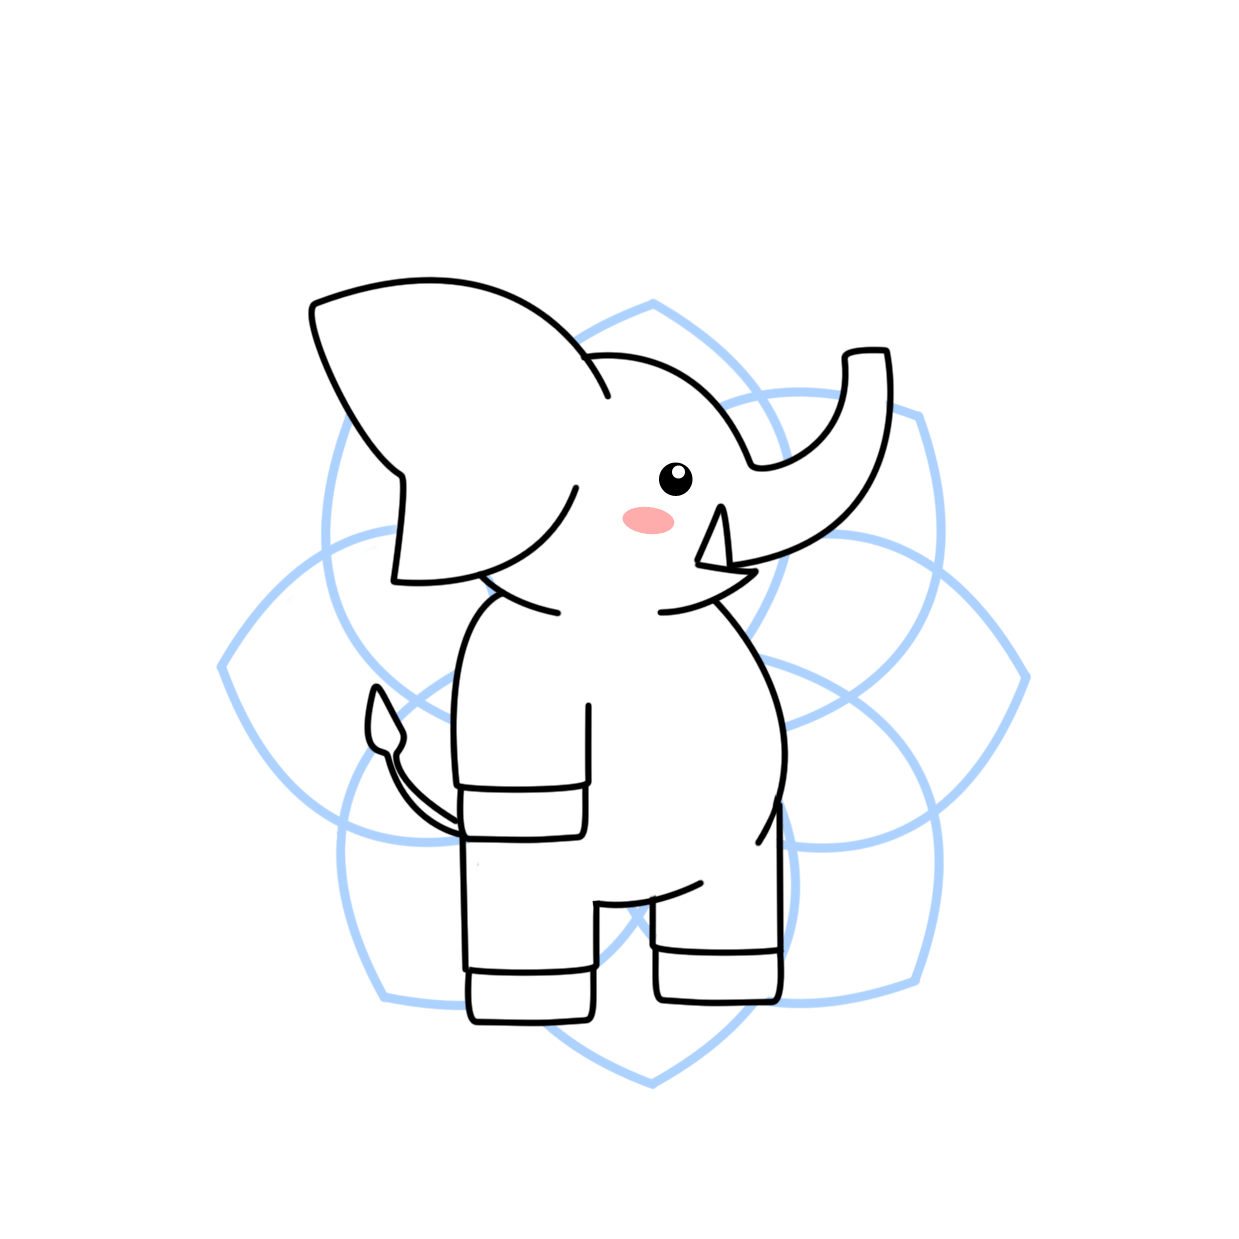 Elephant-final-2